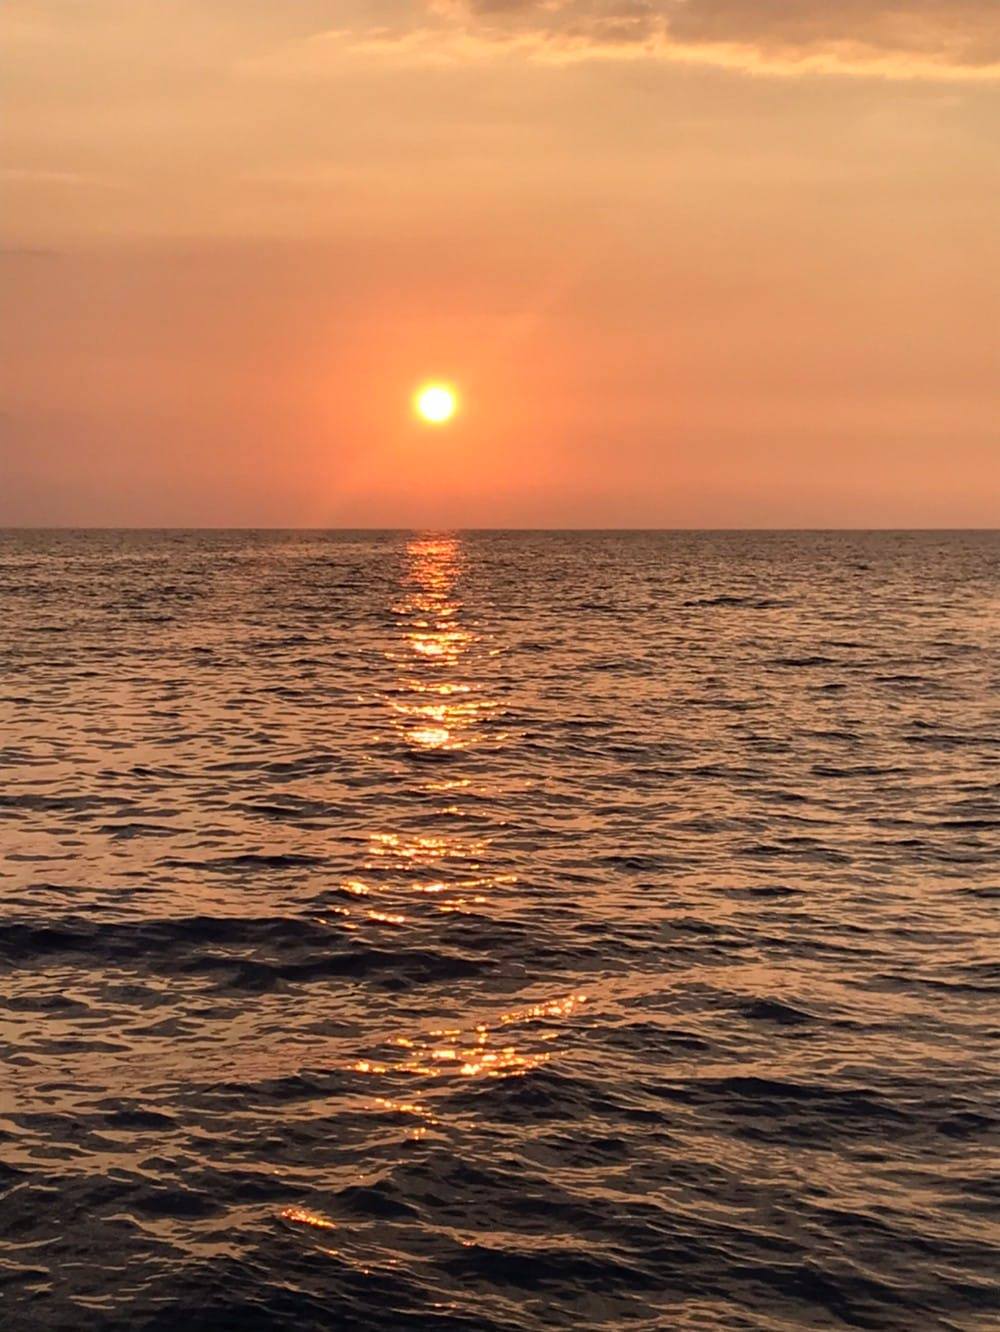 maalaea sunset cruise